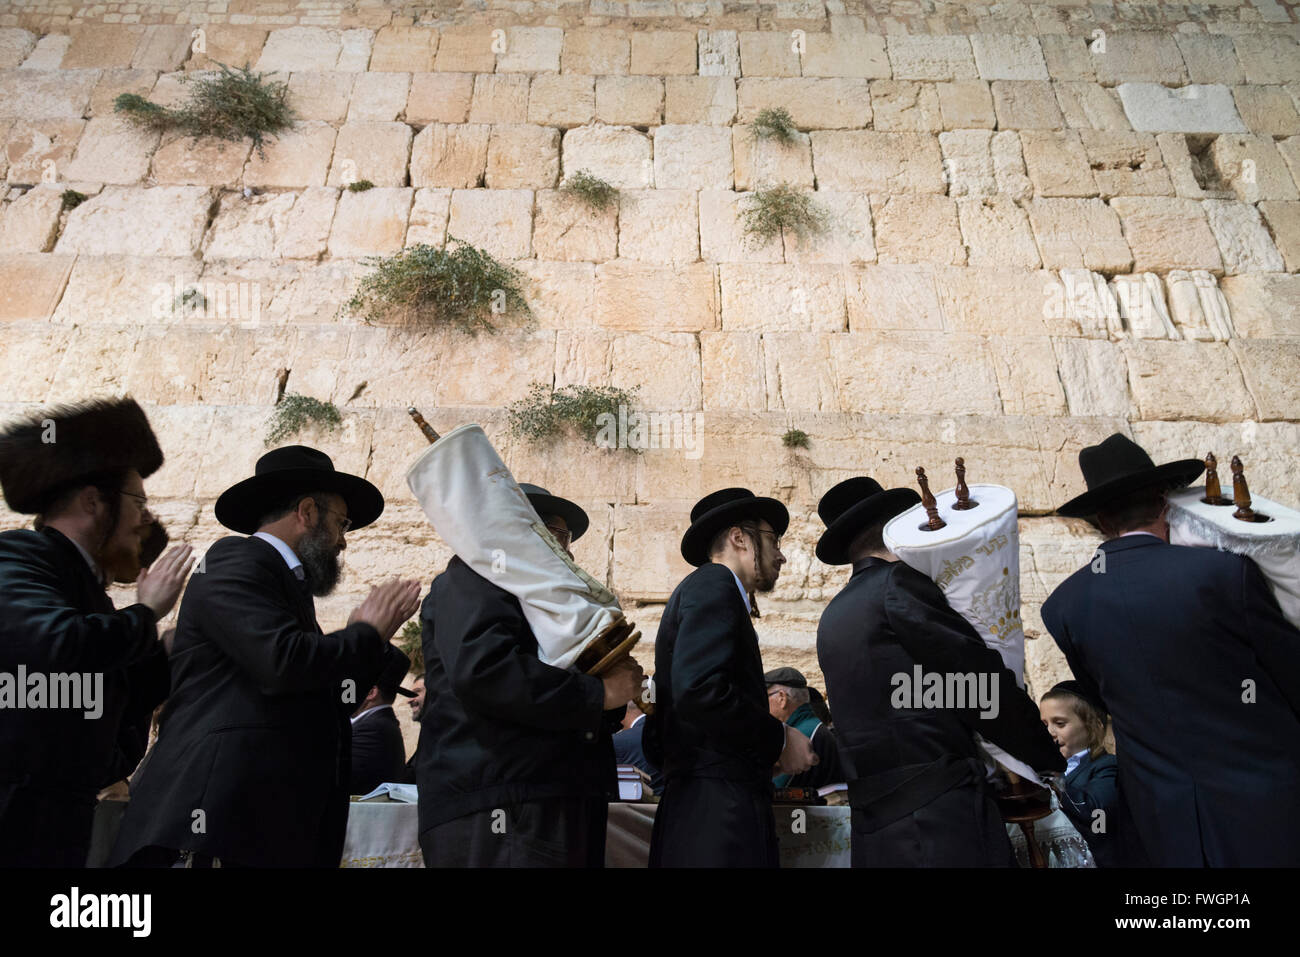 Les Juifs orthodoxes danse avec rouleaux de la Torah pendant Simhat Tora festival, Mur occidental, vieille ville de Jérusalem, Israël, Moyen Orient Banque D'Images